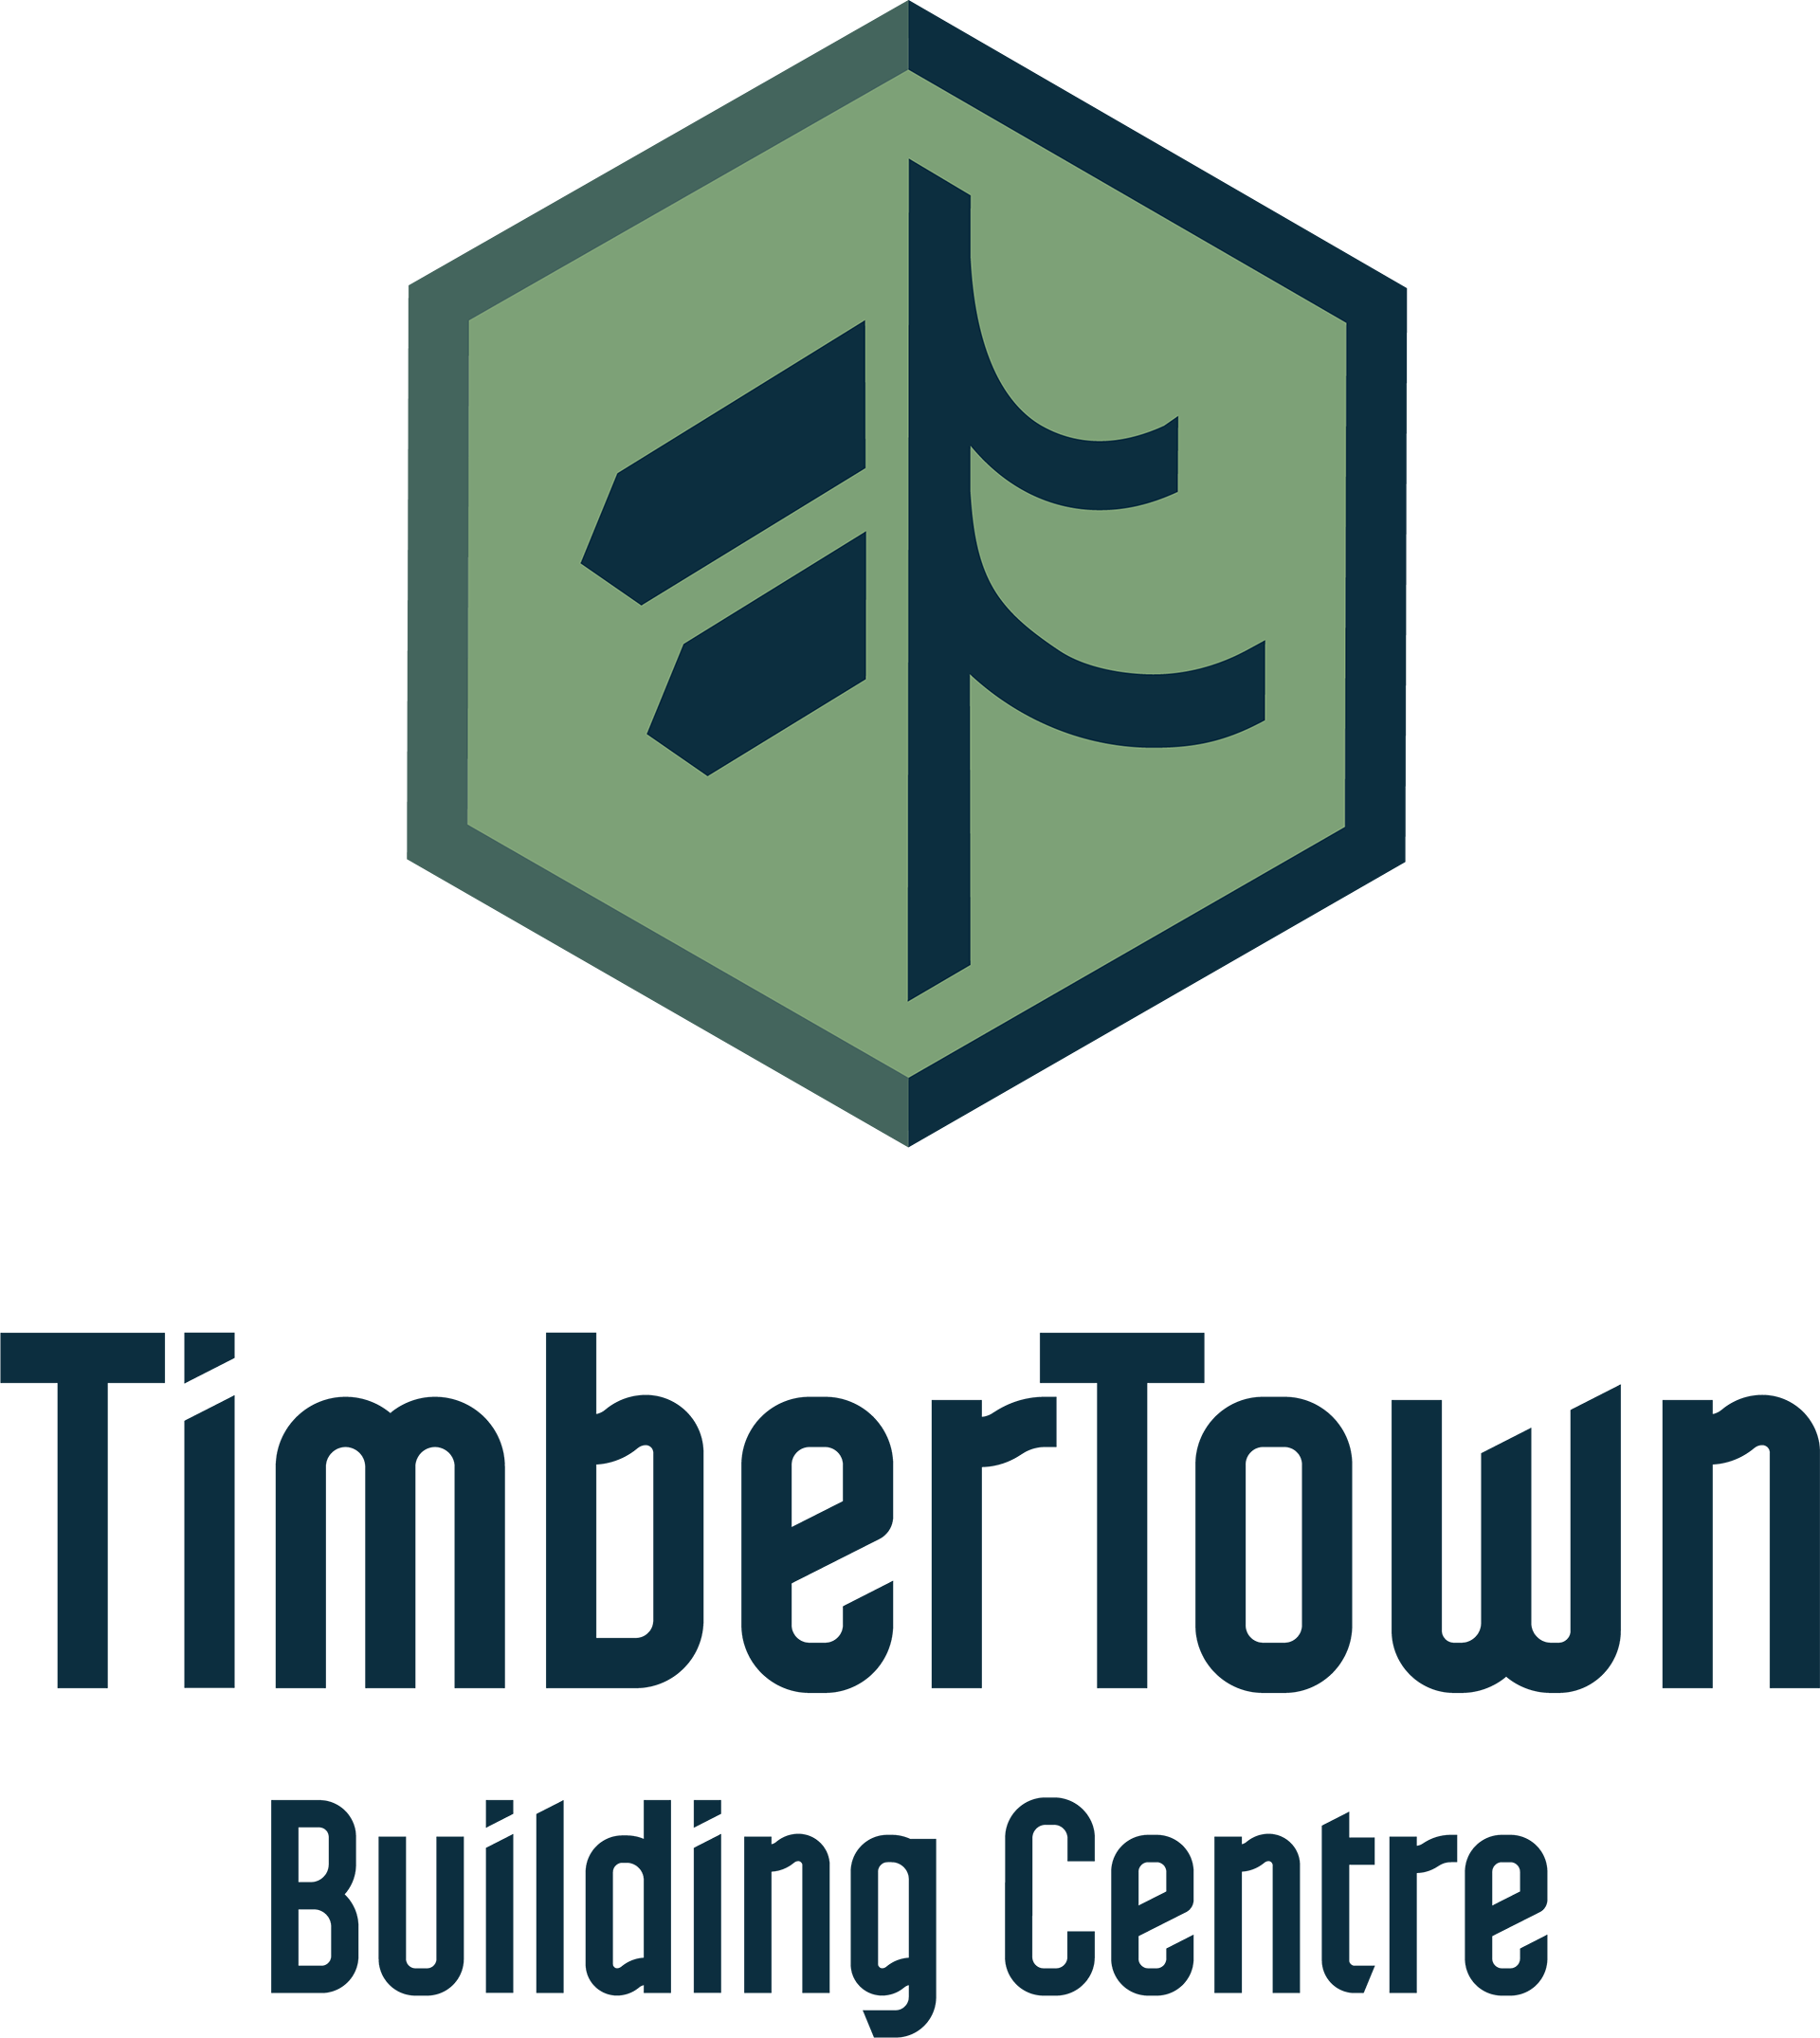 TimberTown Logo